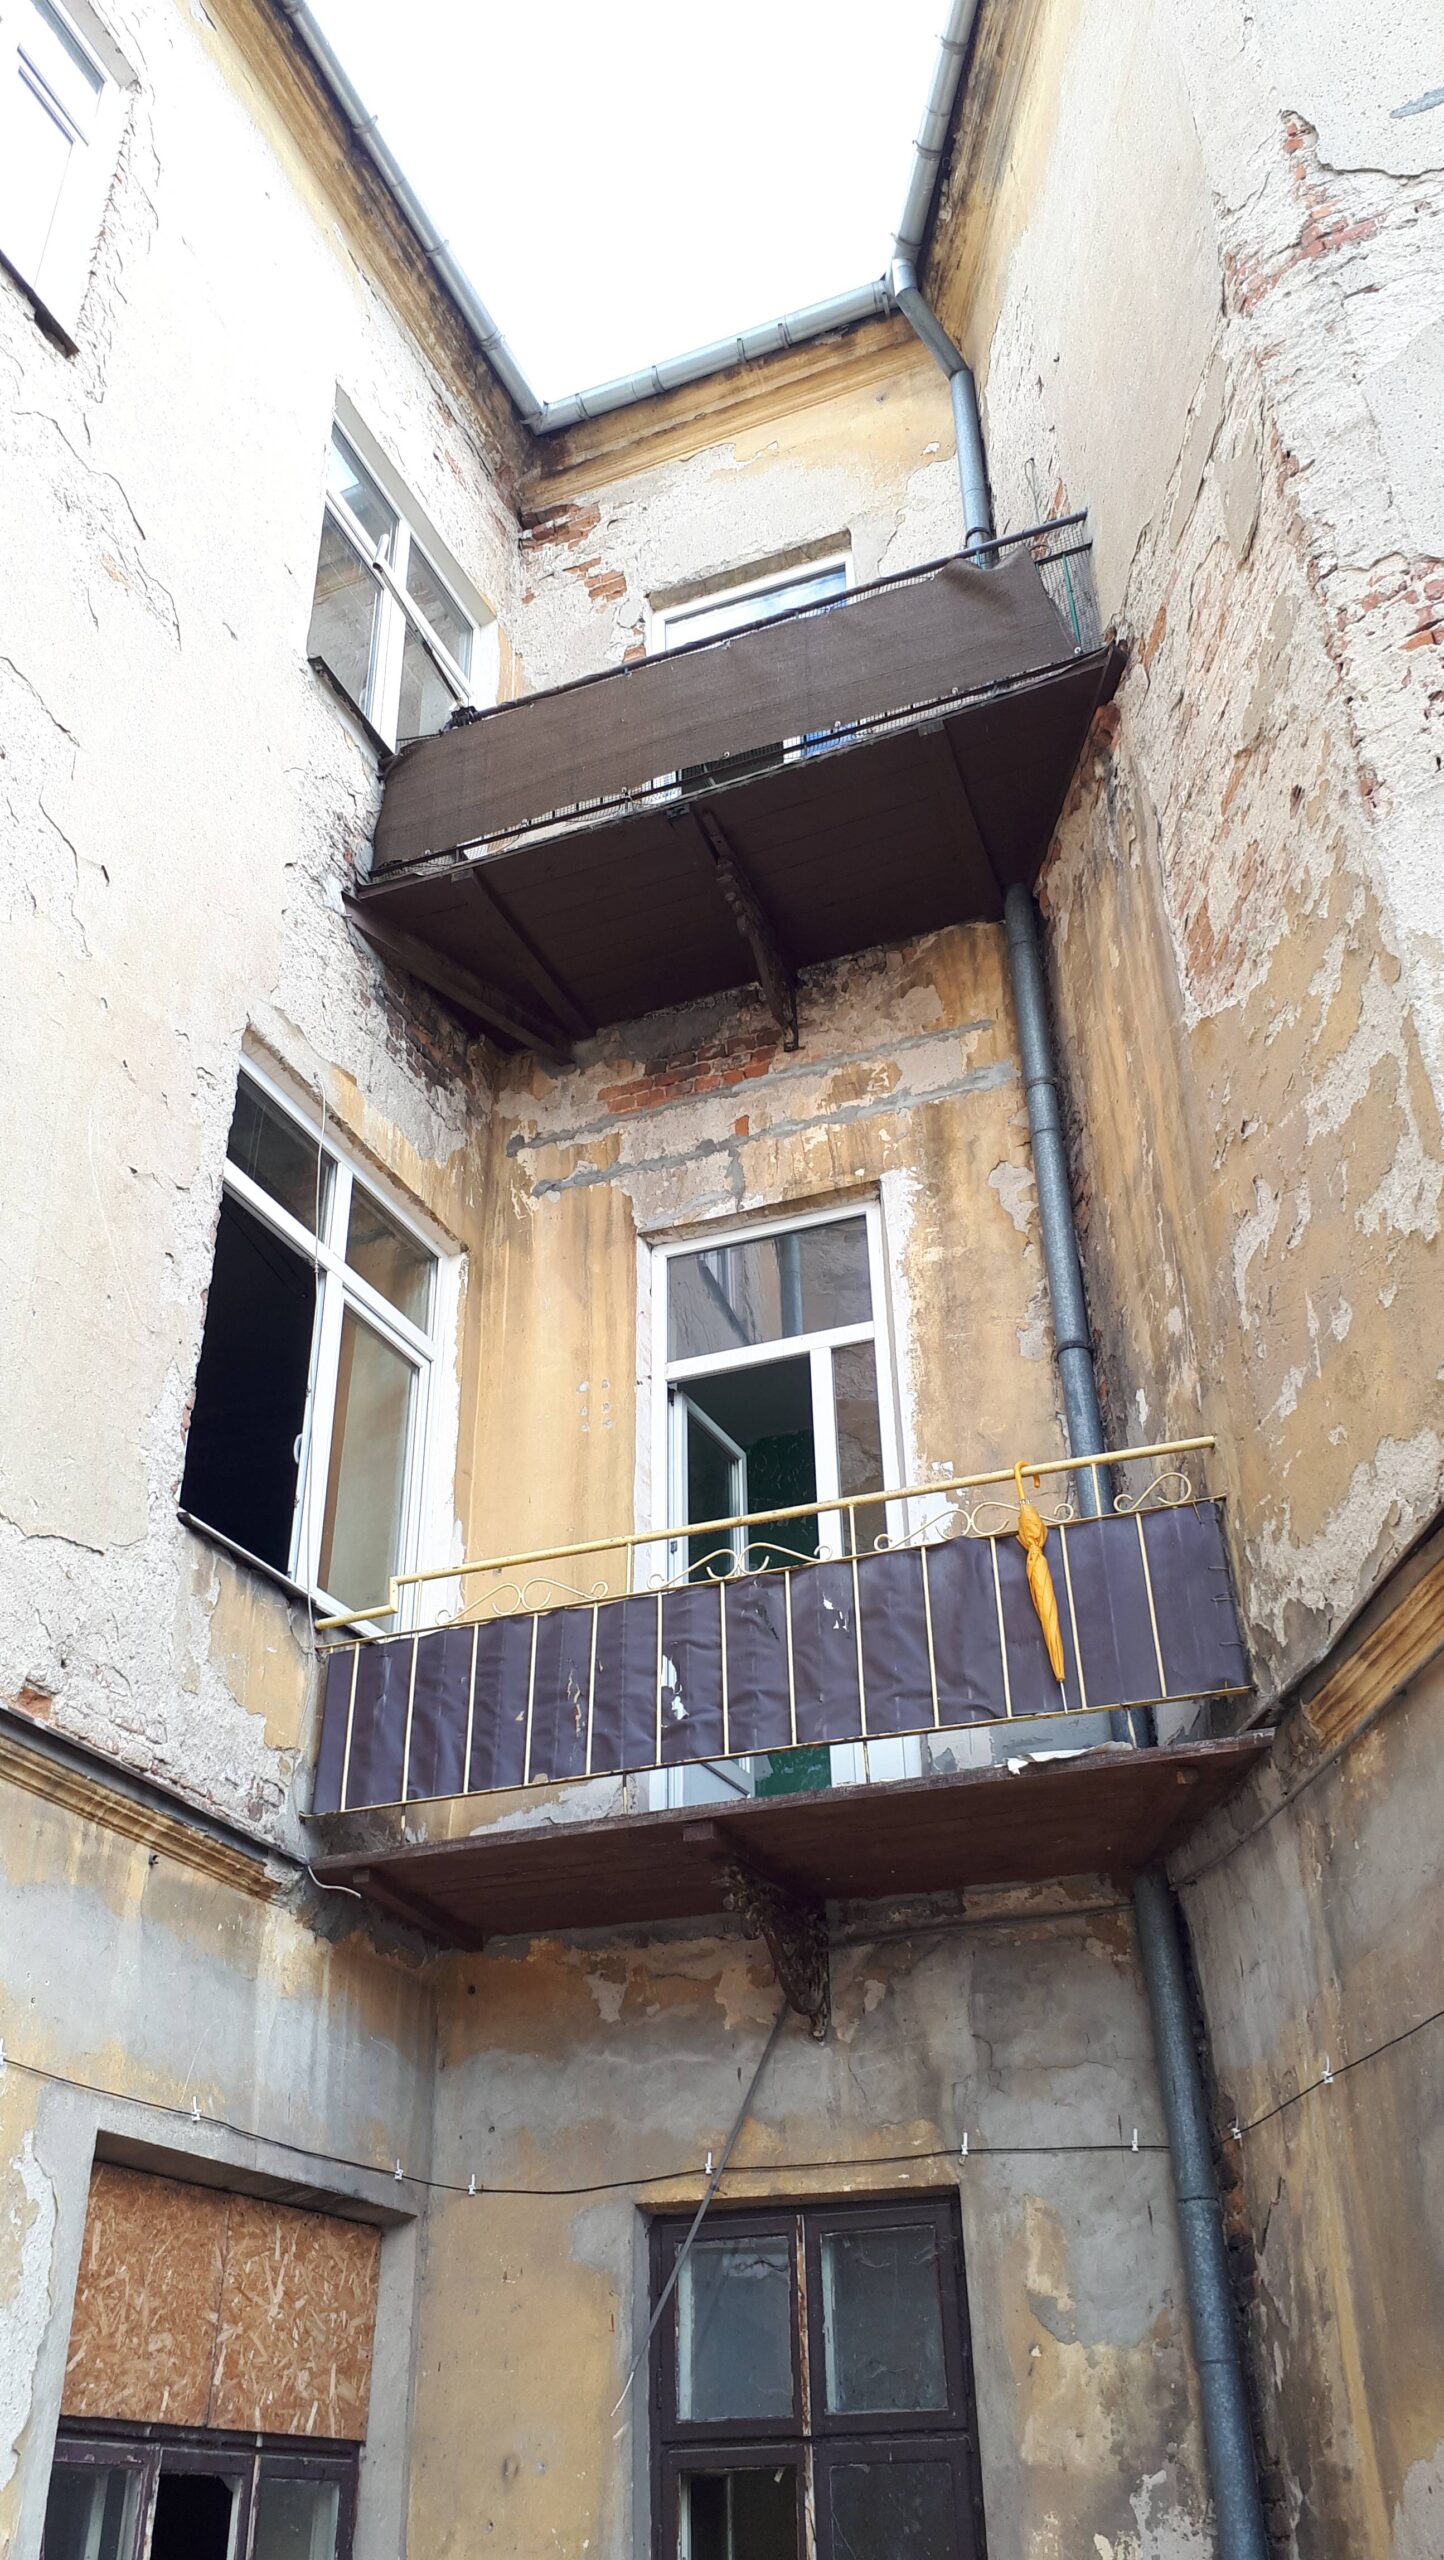 Balkony w północno wschodnim narożniku podwórza. Fot. Robert Marcinkowski 2022 r., źródło: Res in Ornamento II.